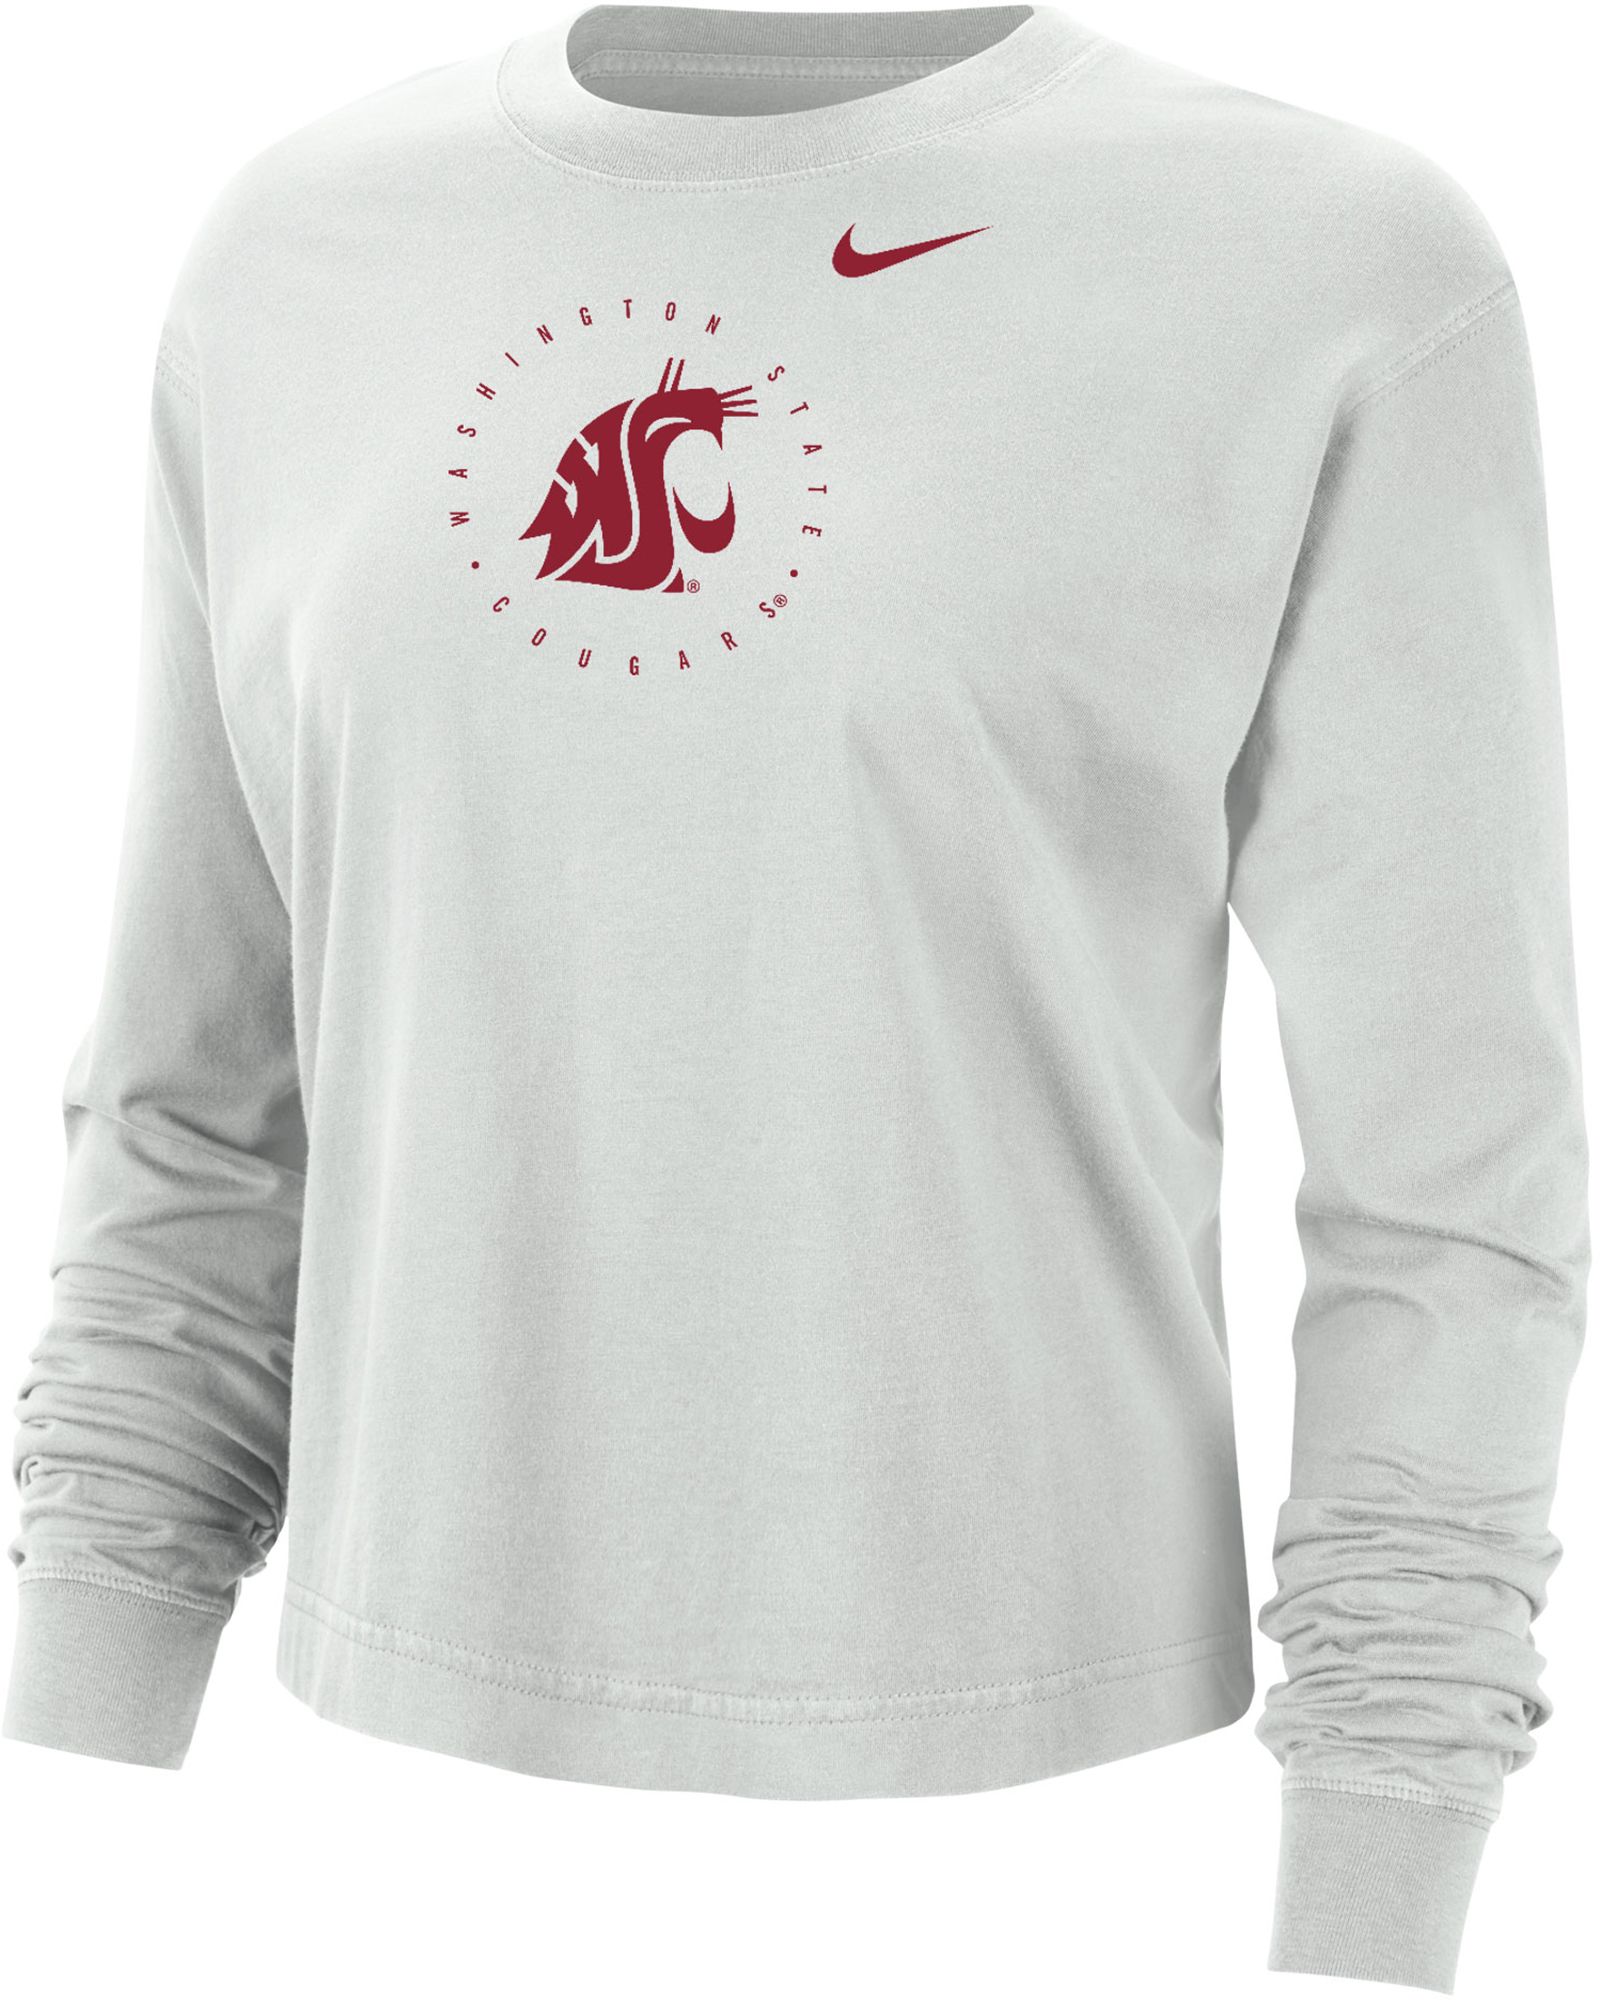 Nike Women's Washington State Cougars Grey Boxy Cropped Long Sleeve T-Shirt